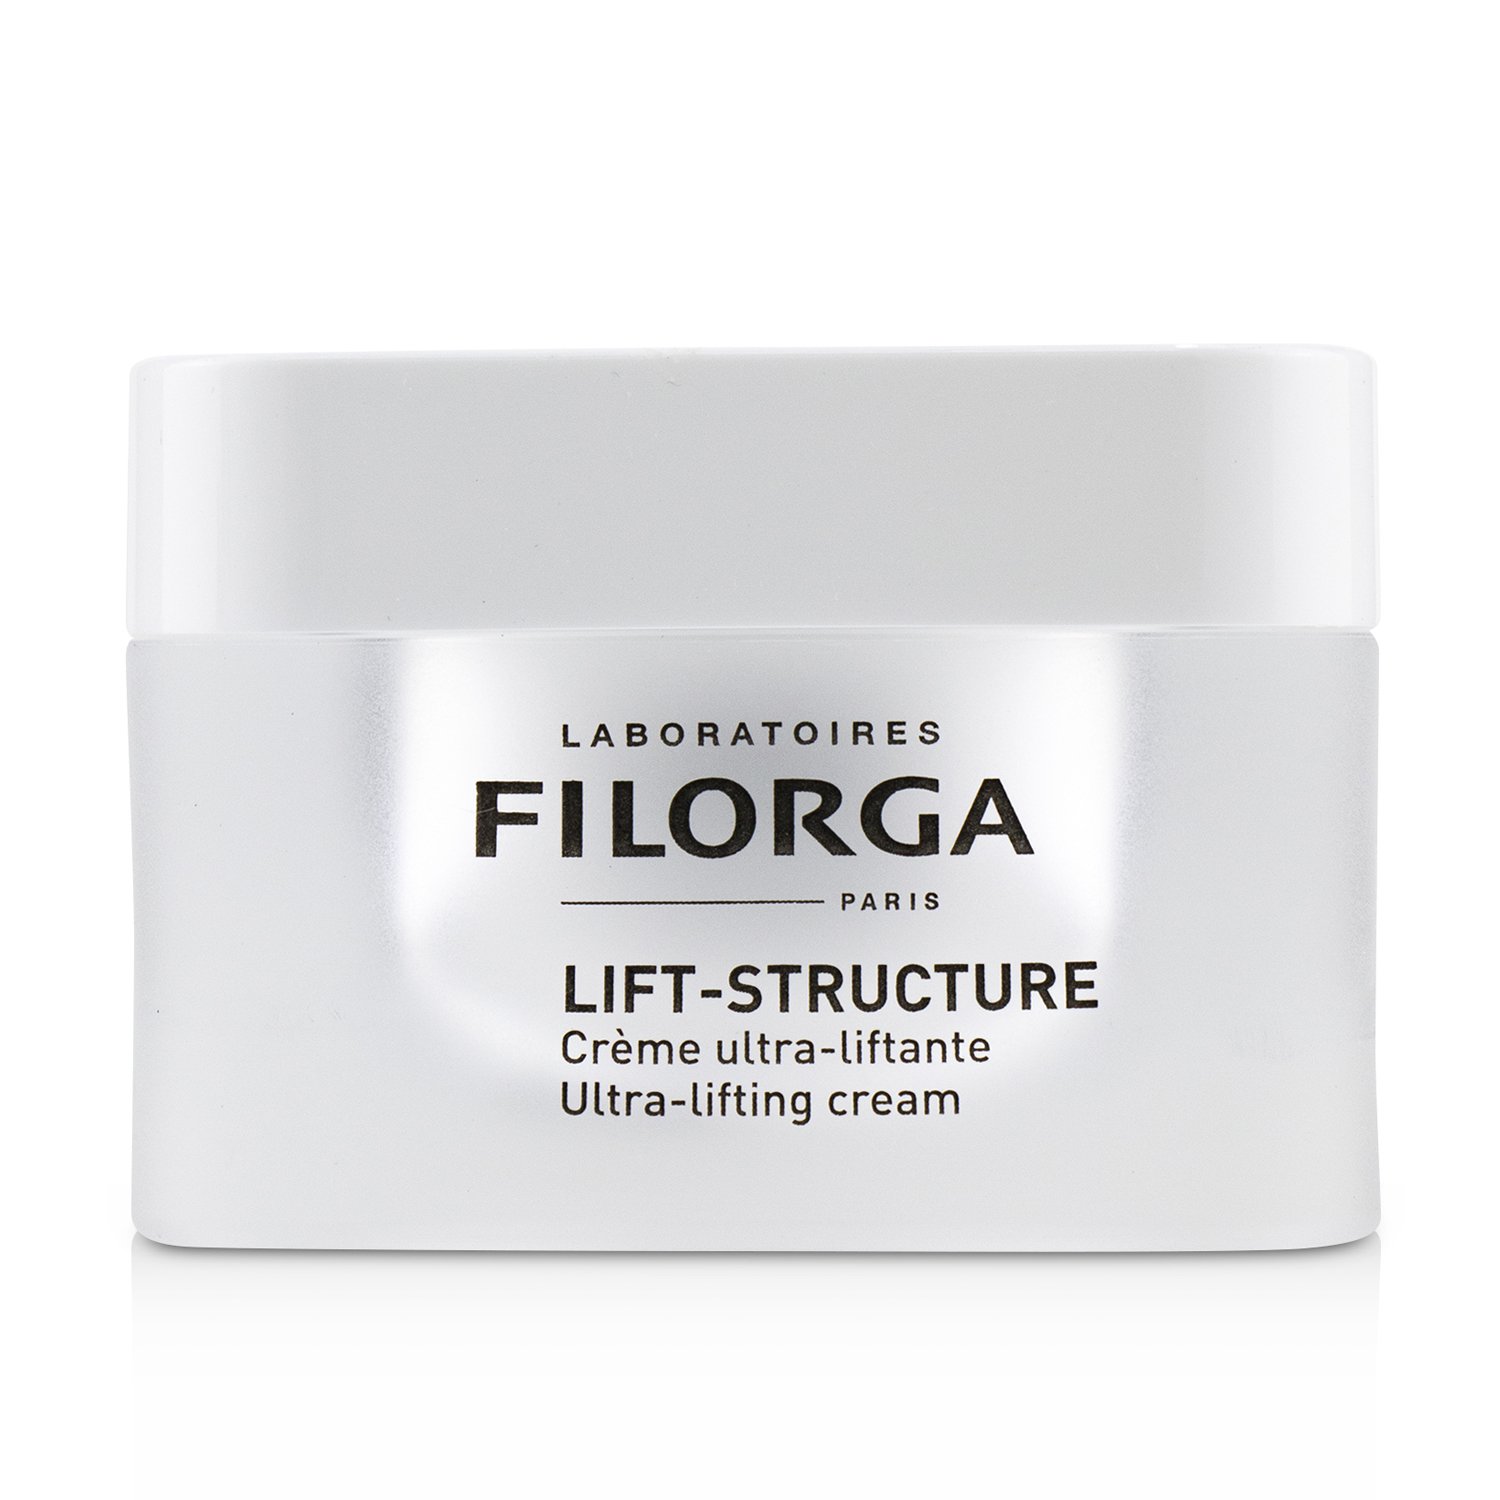 菲洛嘉 Filorga - 提拉緊緻塑顏日霜